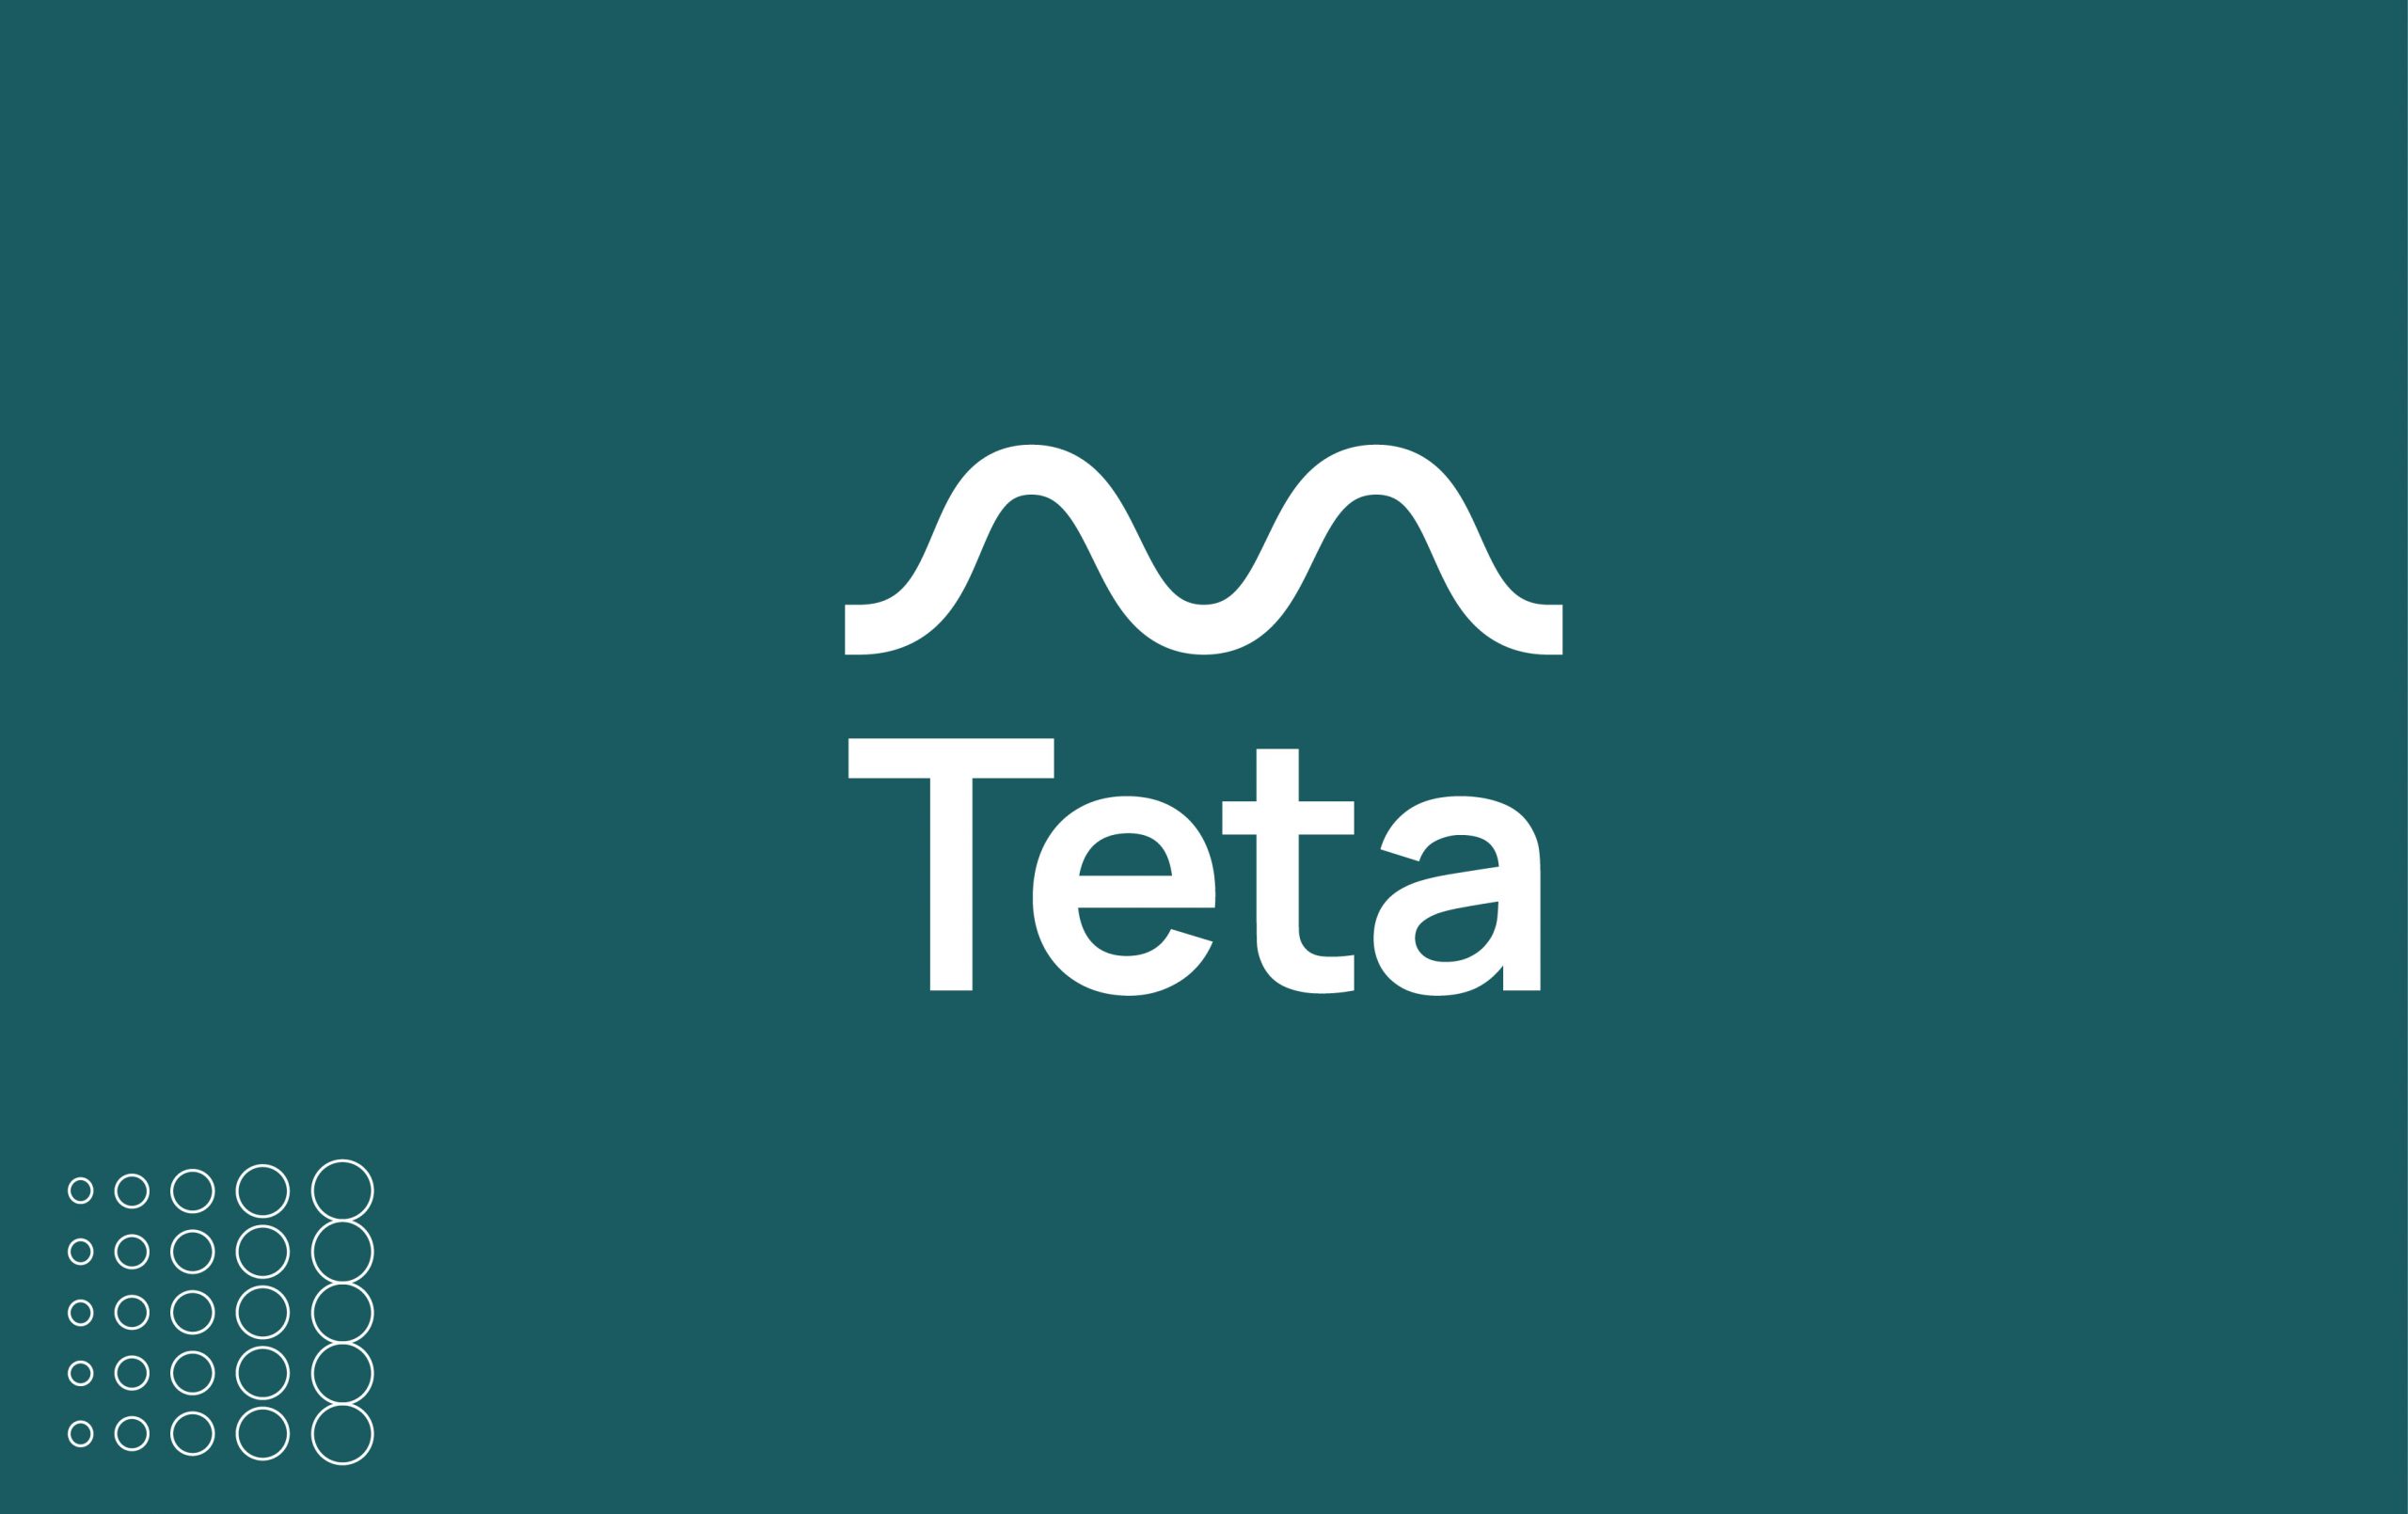 Exor Seeds investe in Teta, l’app builder “low-code” della Generazione Z